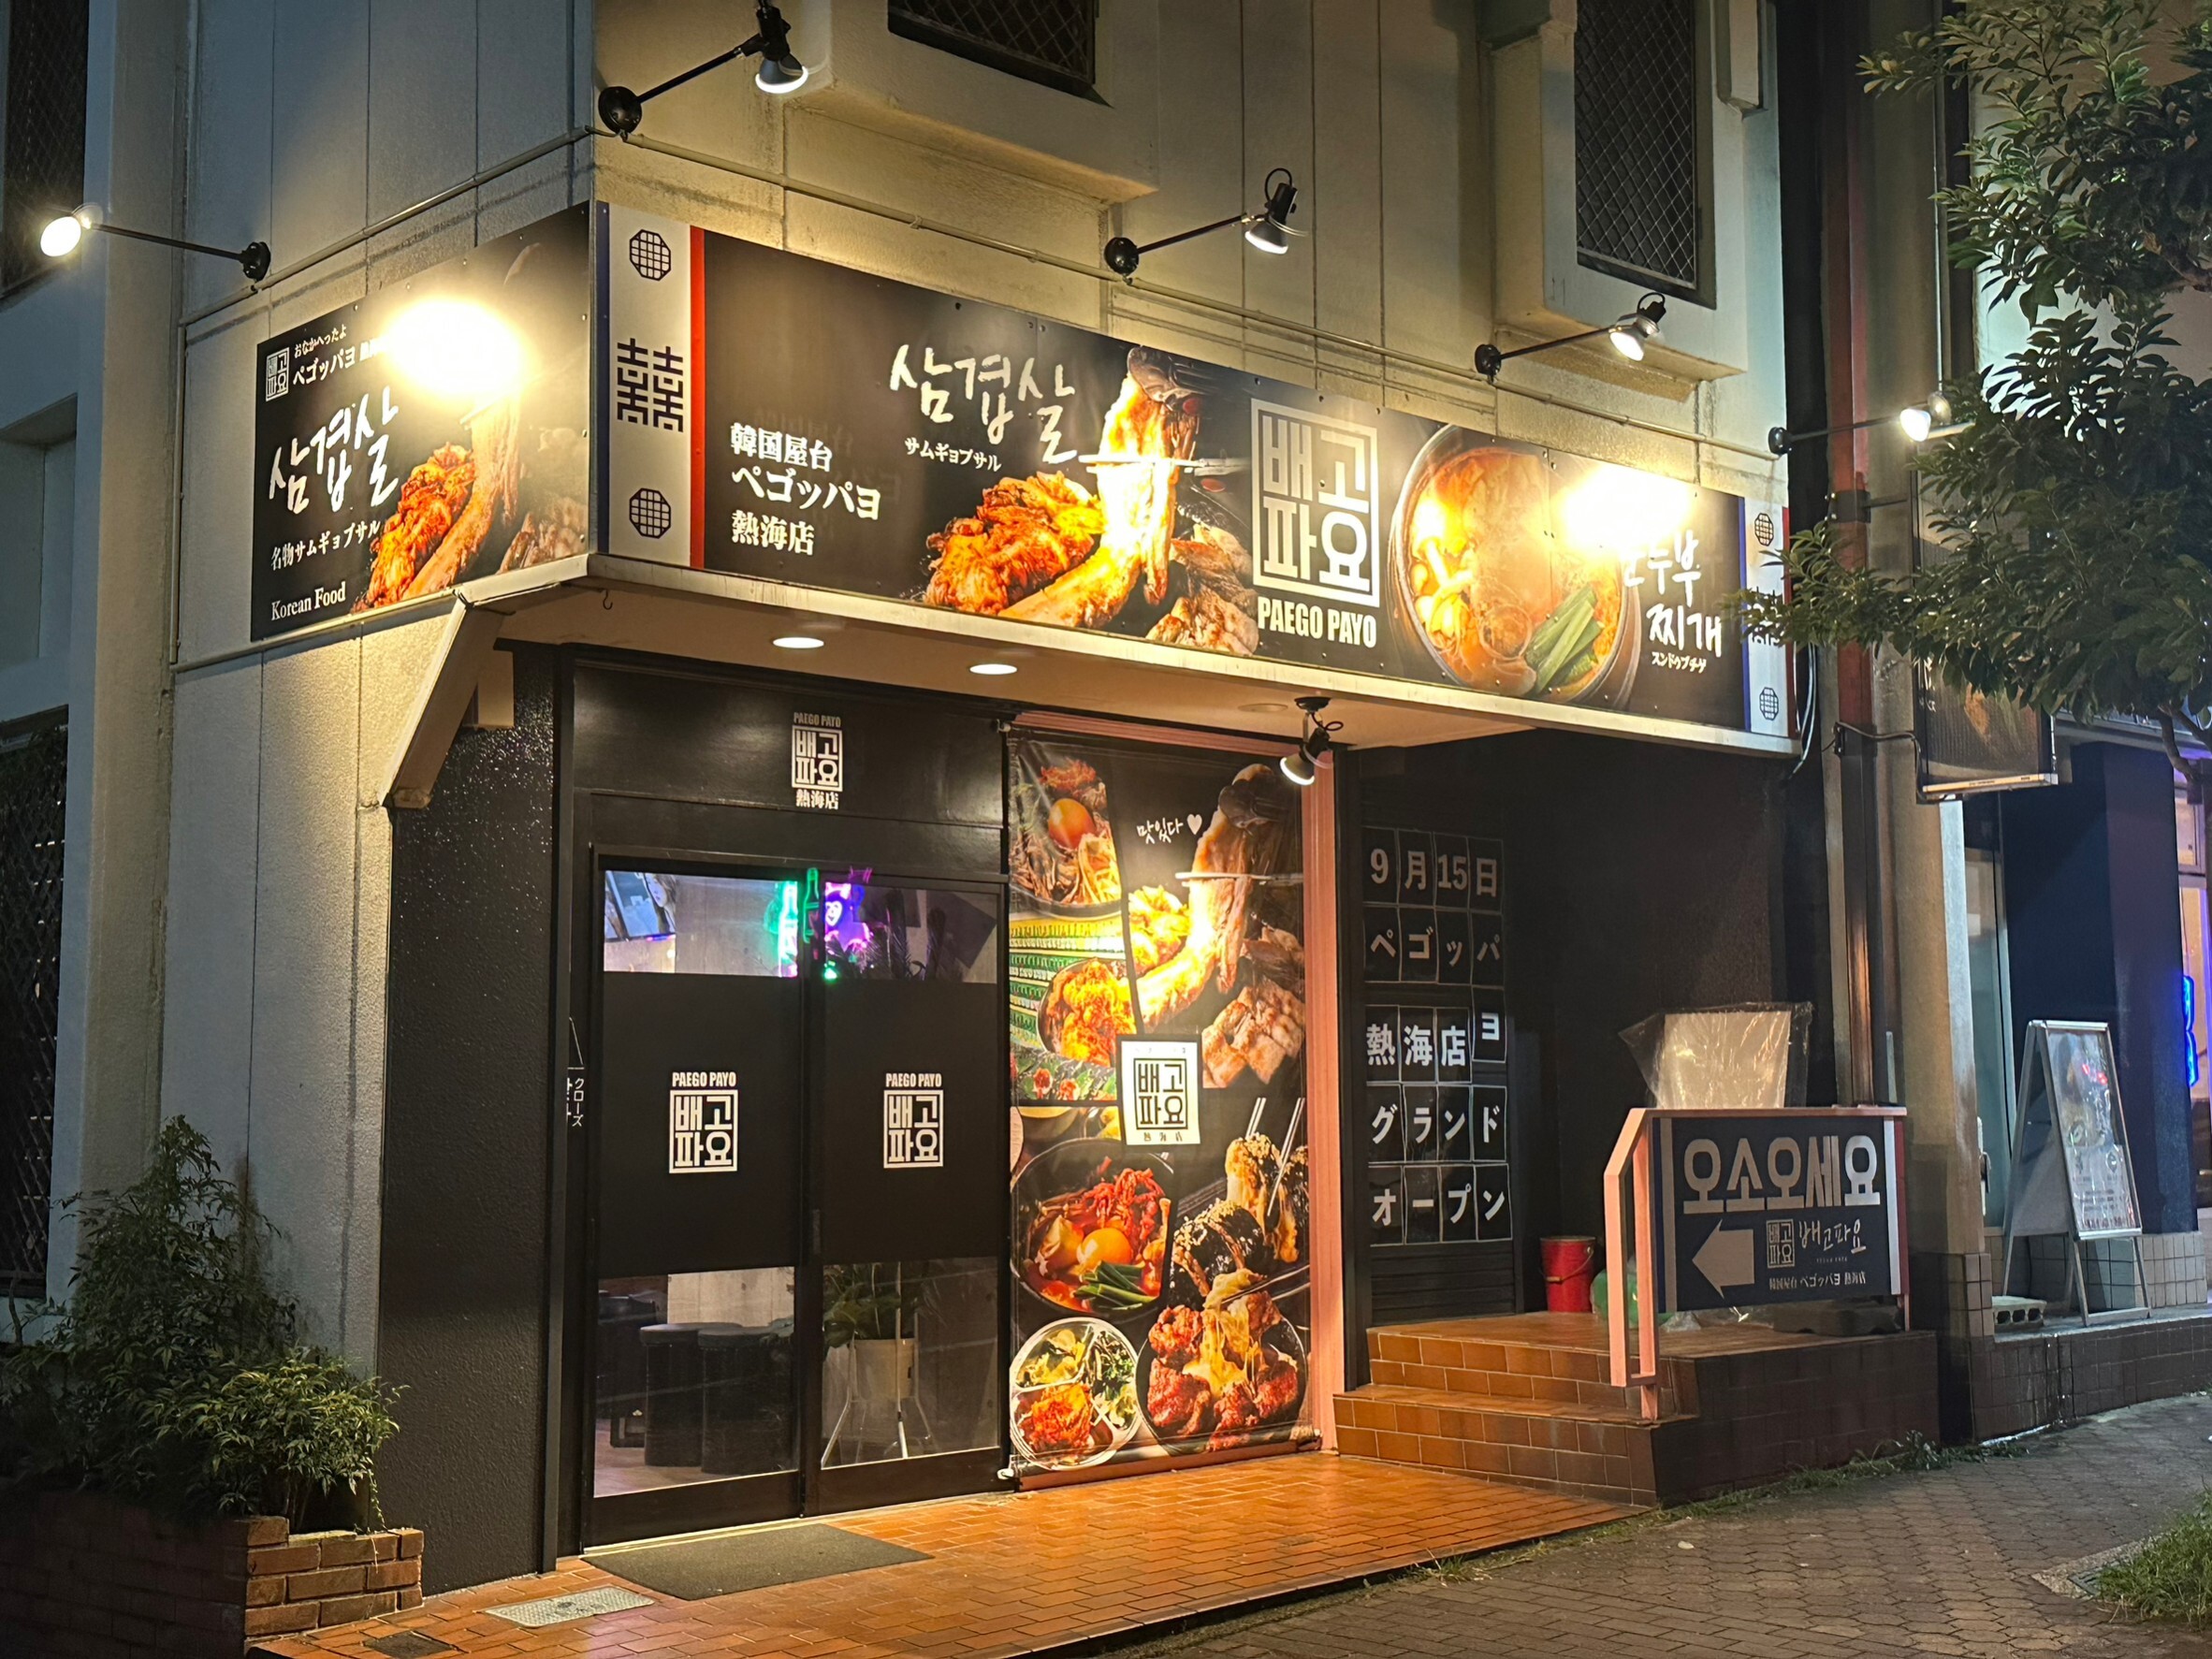 熱海で本格韓国料理が楽しめるお店
　9/15の開店以来、連日大賑わい！
スマホ持参でお得な特典が(10/15まで)